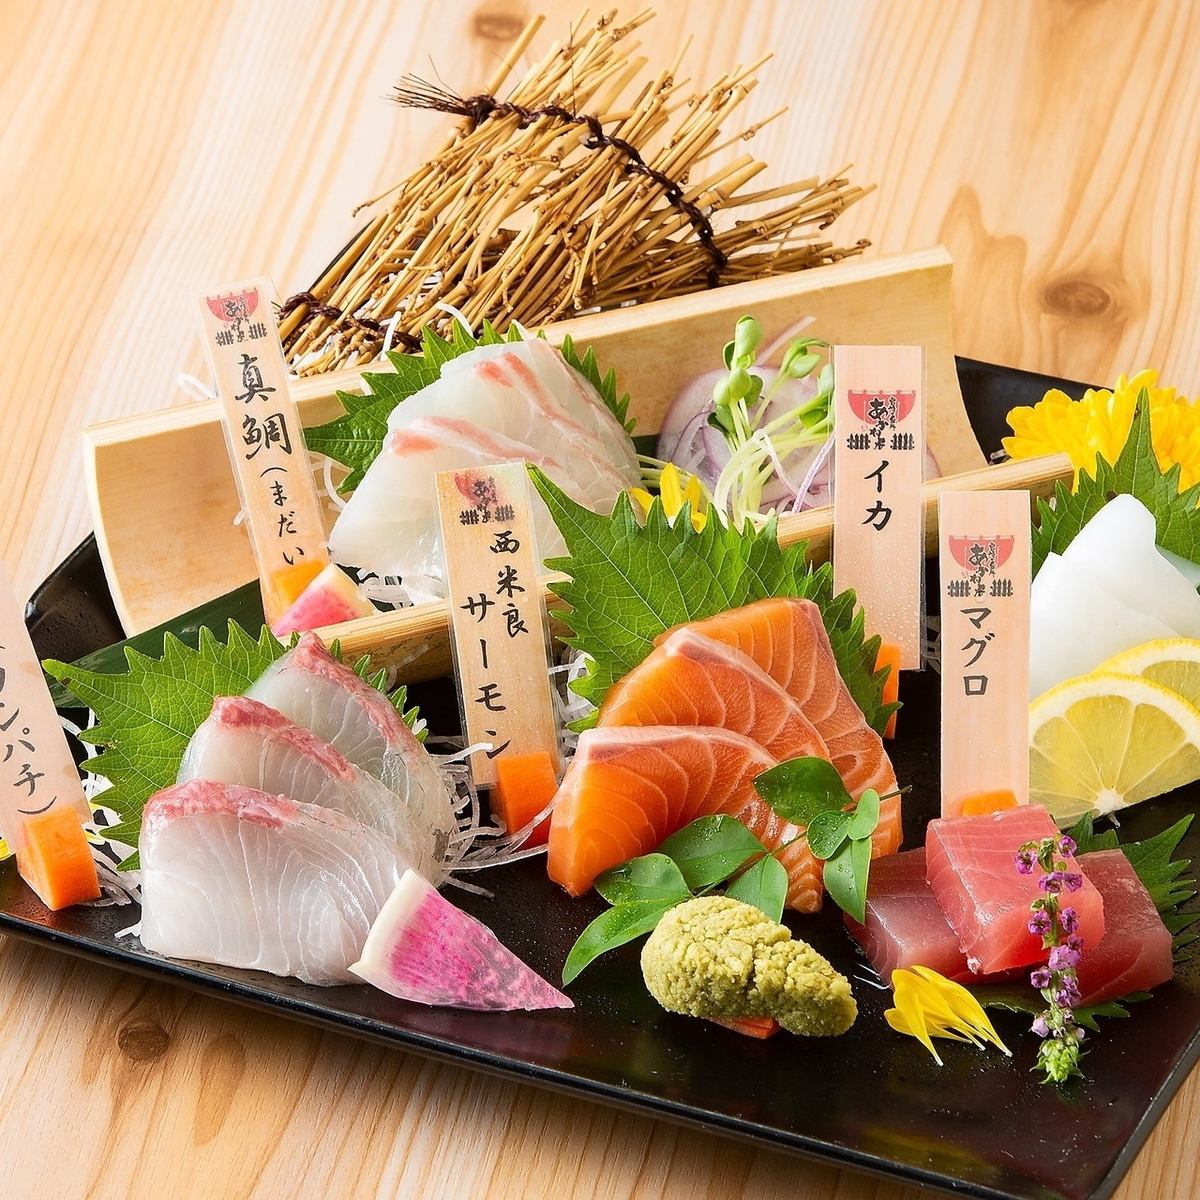 [Ultimate aged sashimi] Enjoy fresh fish that goes perfectly with sake!